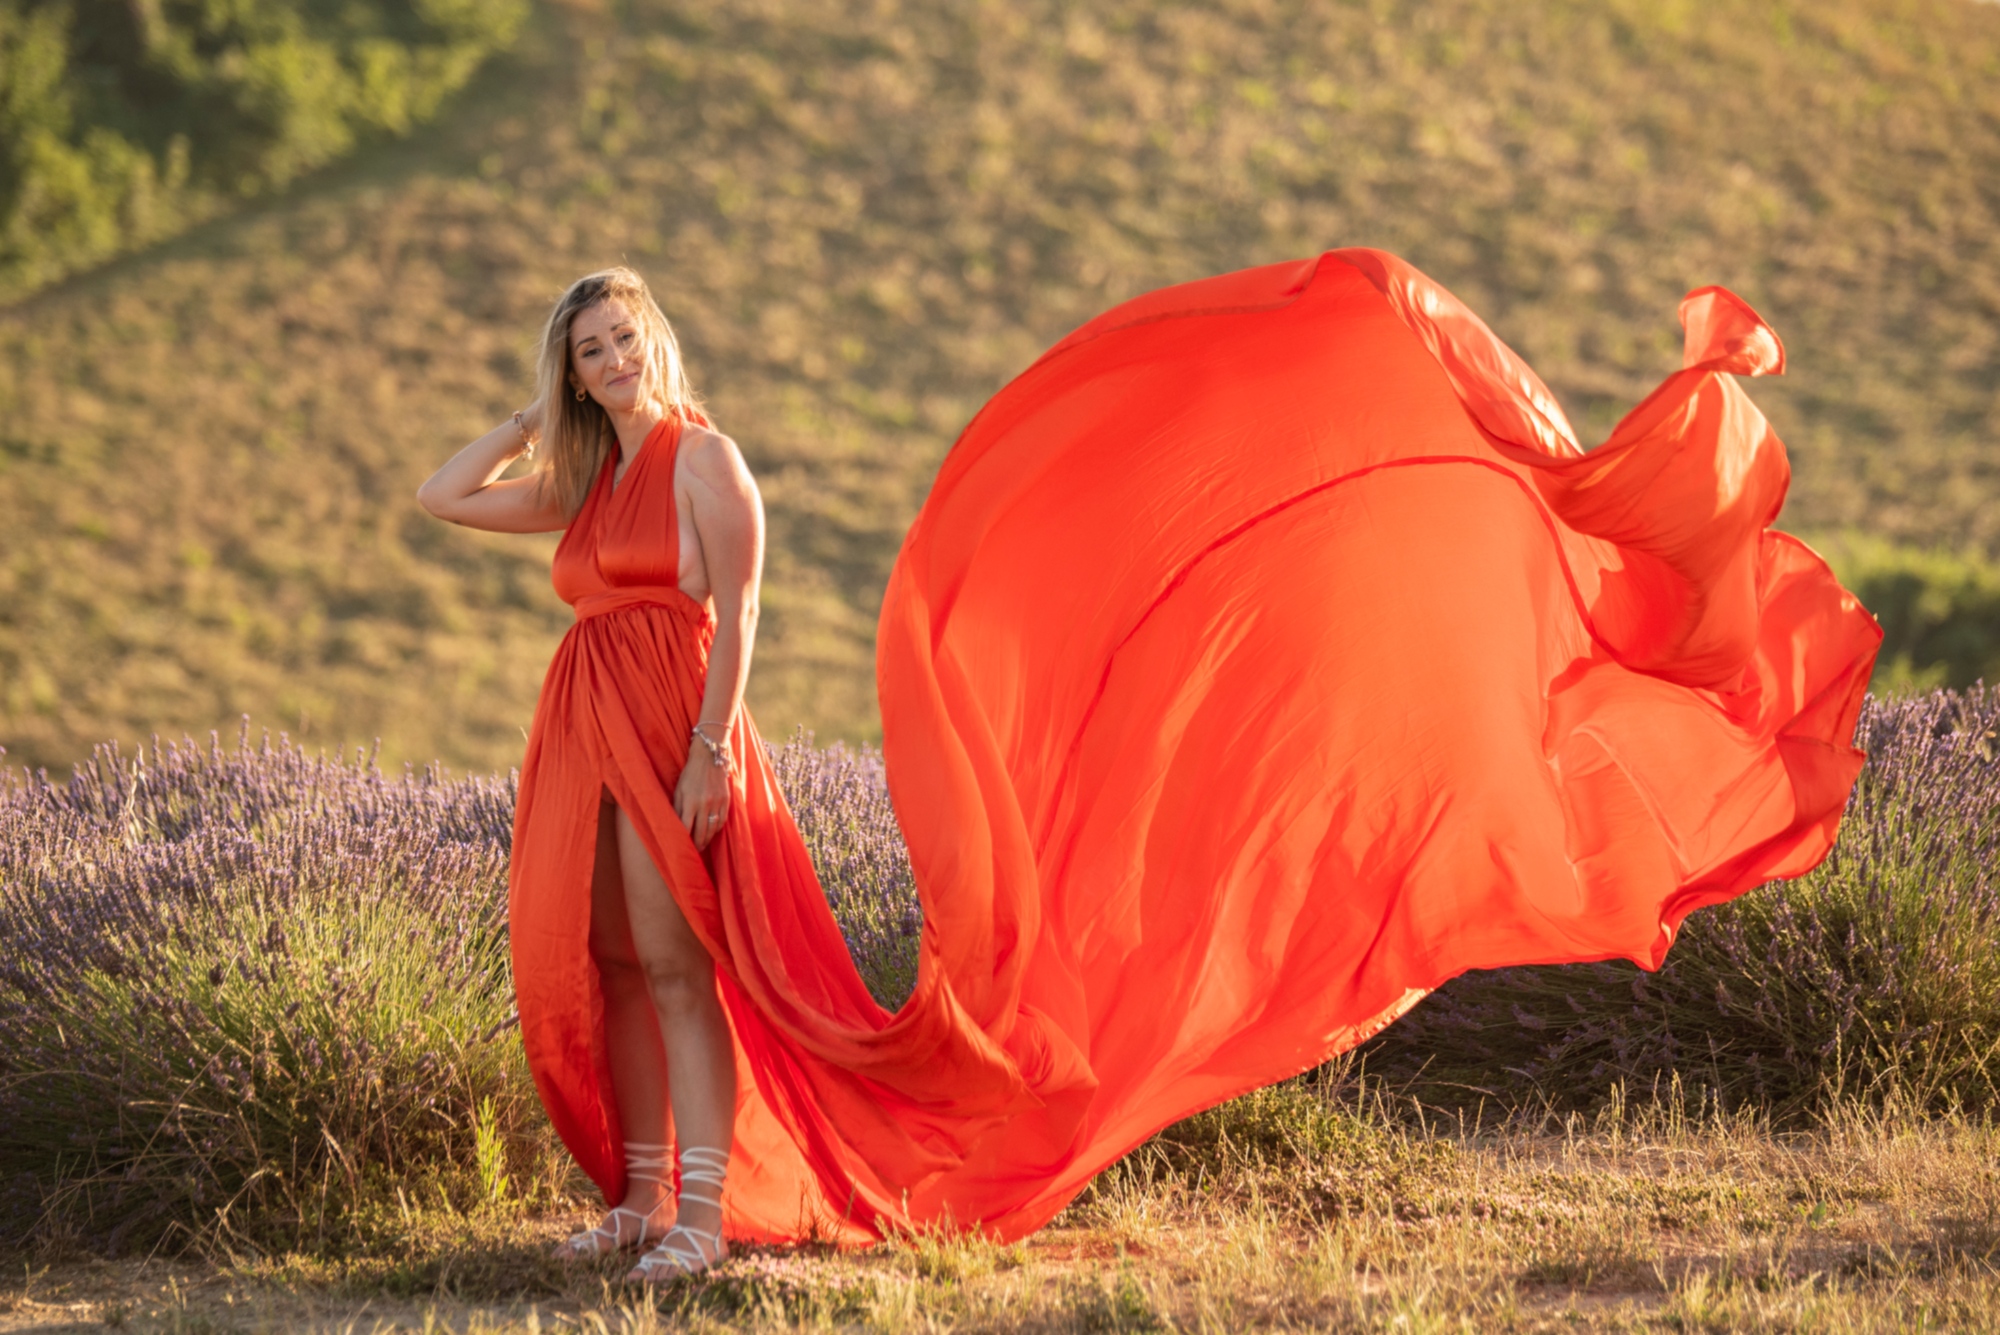 Séance photo dans la campagne toscane avec une robe volante